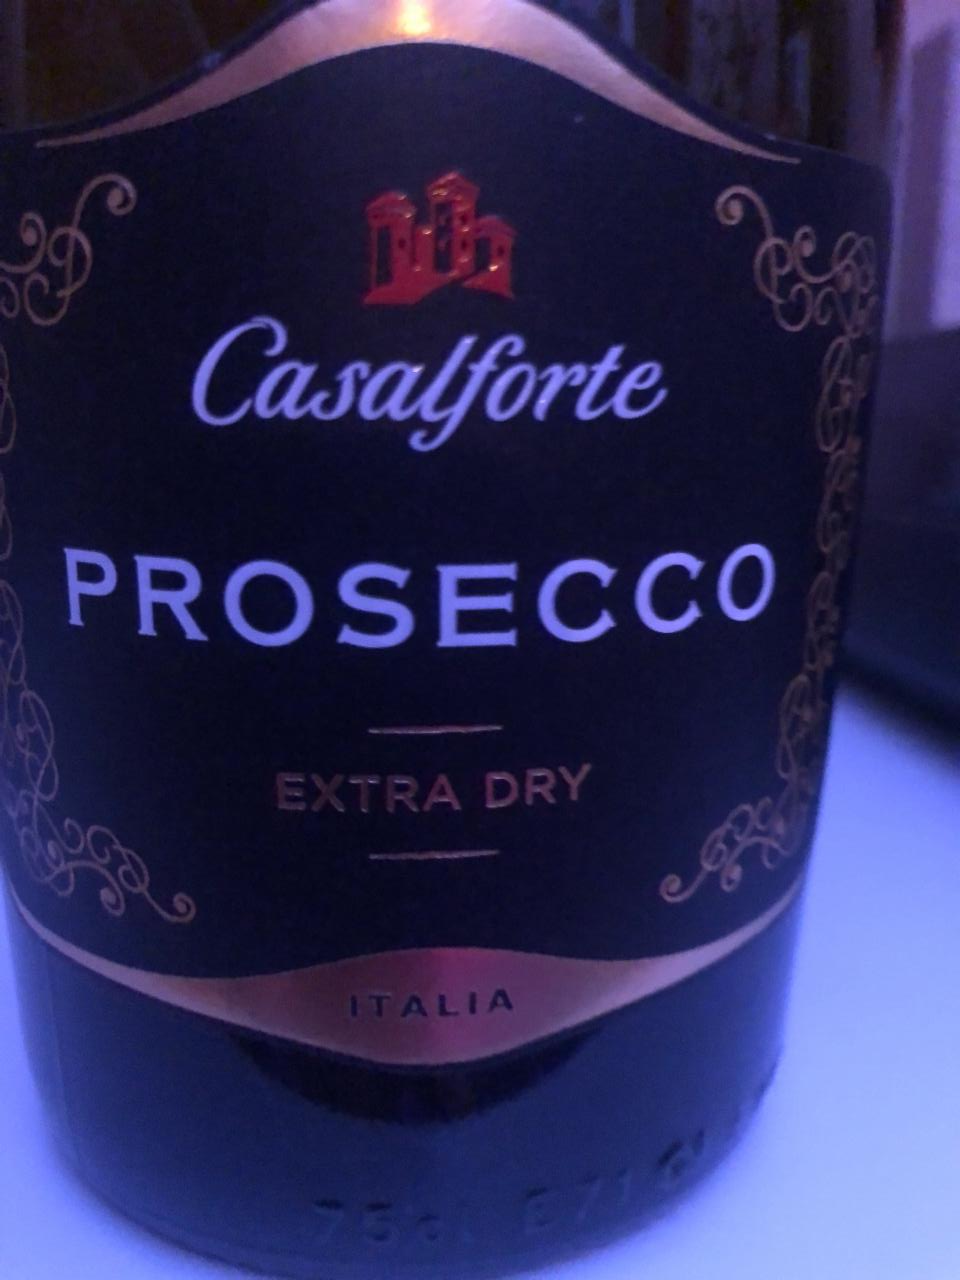 Fotografie - Prosecco Castelforte Extra Dry